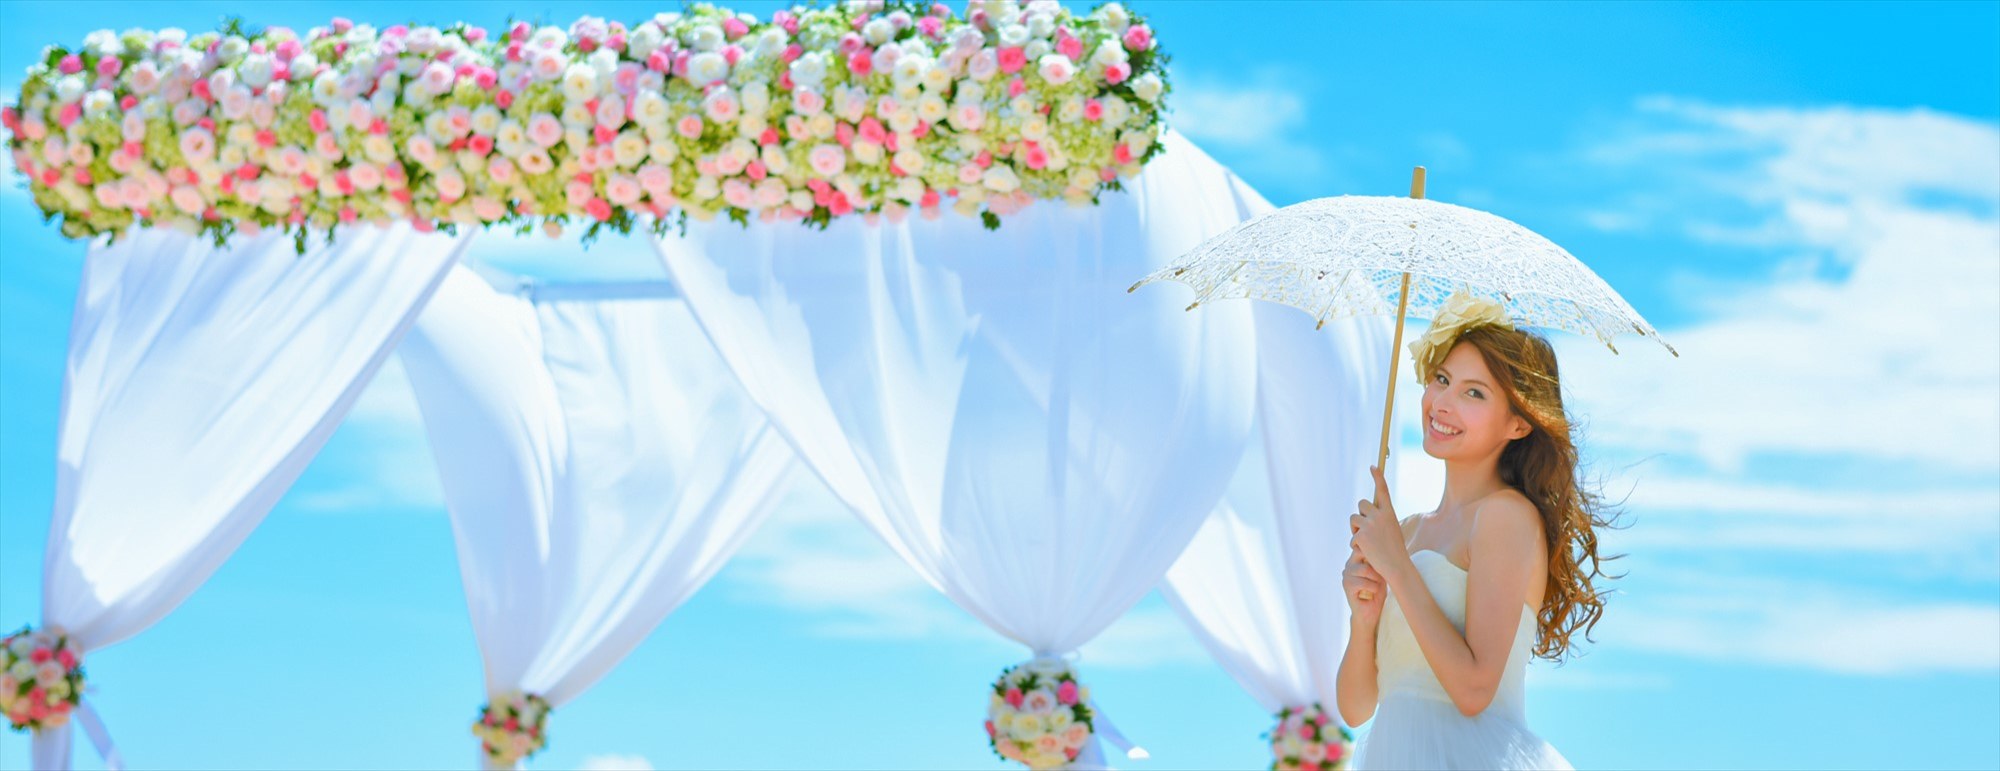 ベトナム・ダナン・ビーチウェディング<br />
Angsana Lang Co Wedding<br />
アンサナ・ラン・コー挙式